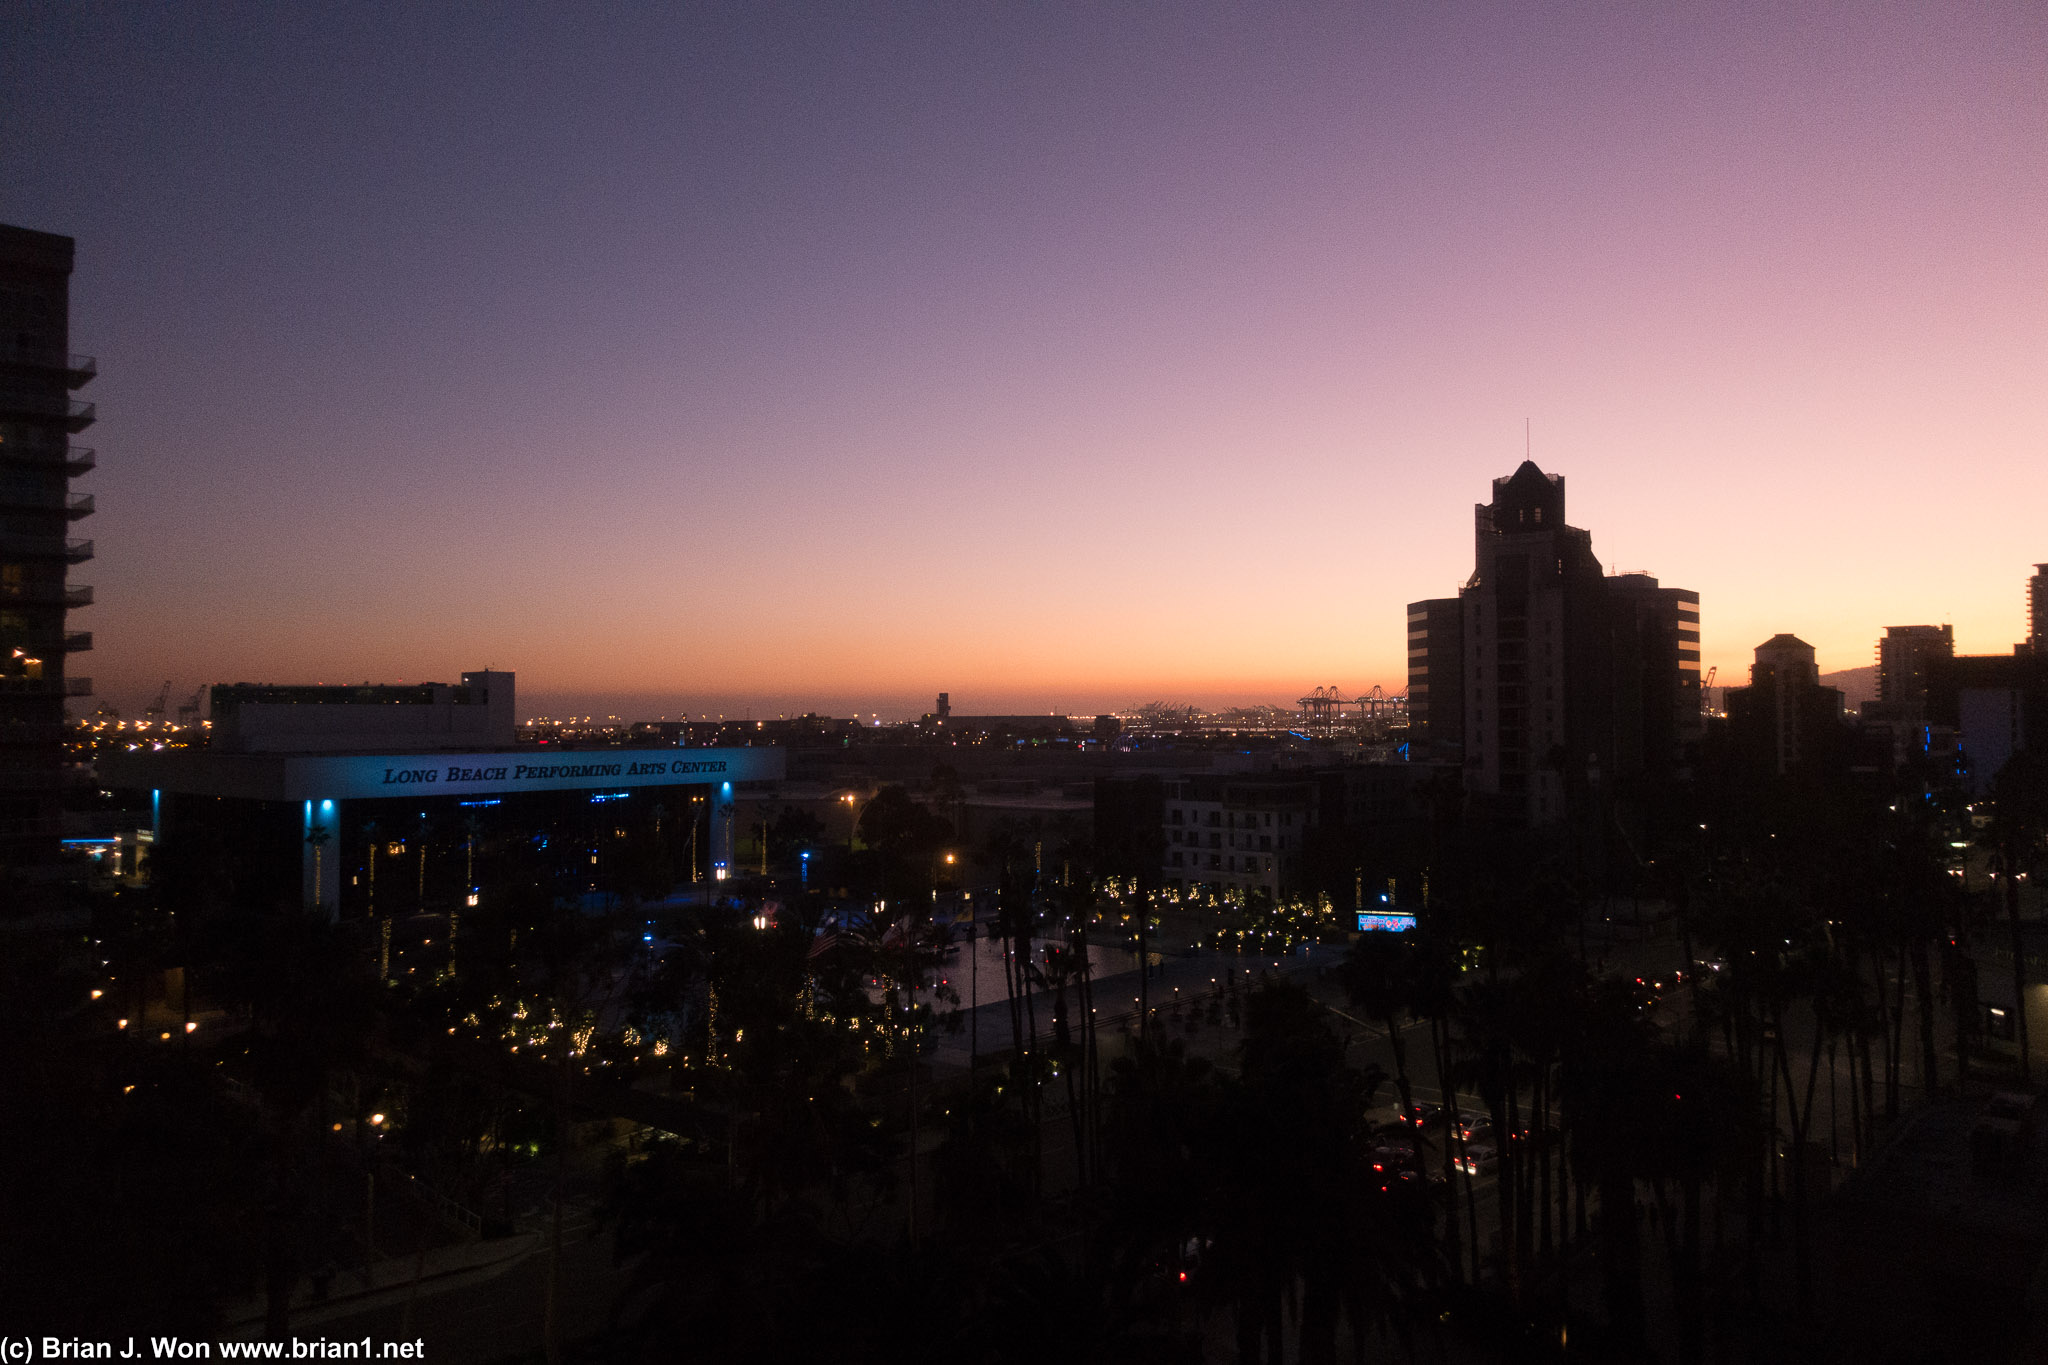 Sunset over Long Beach.